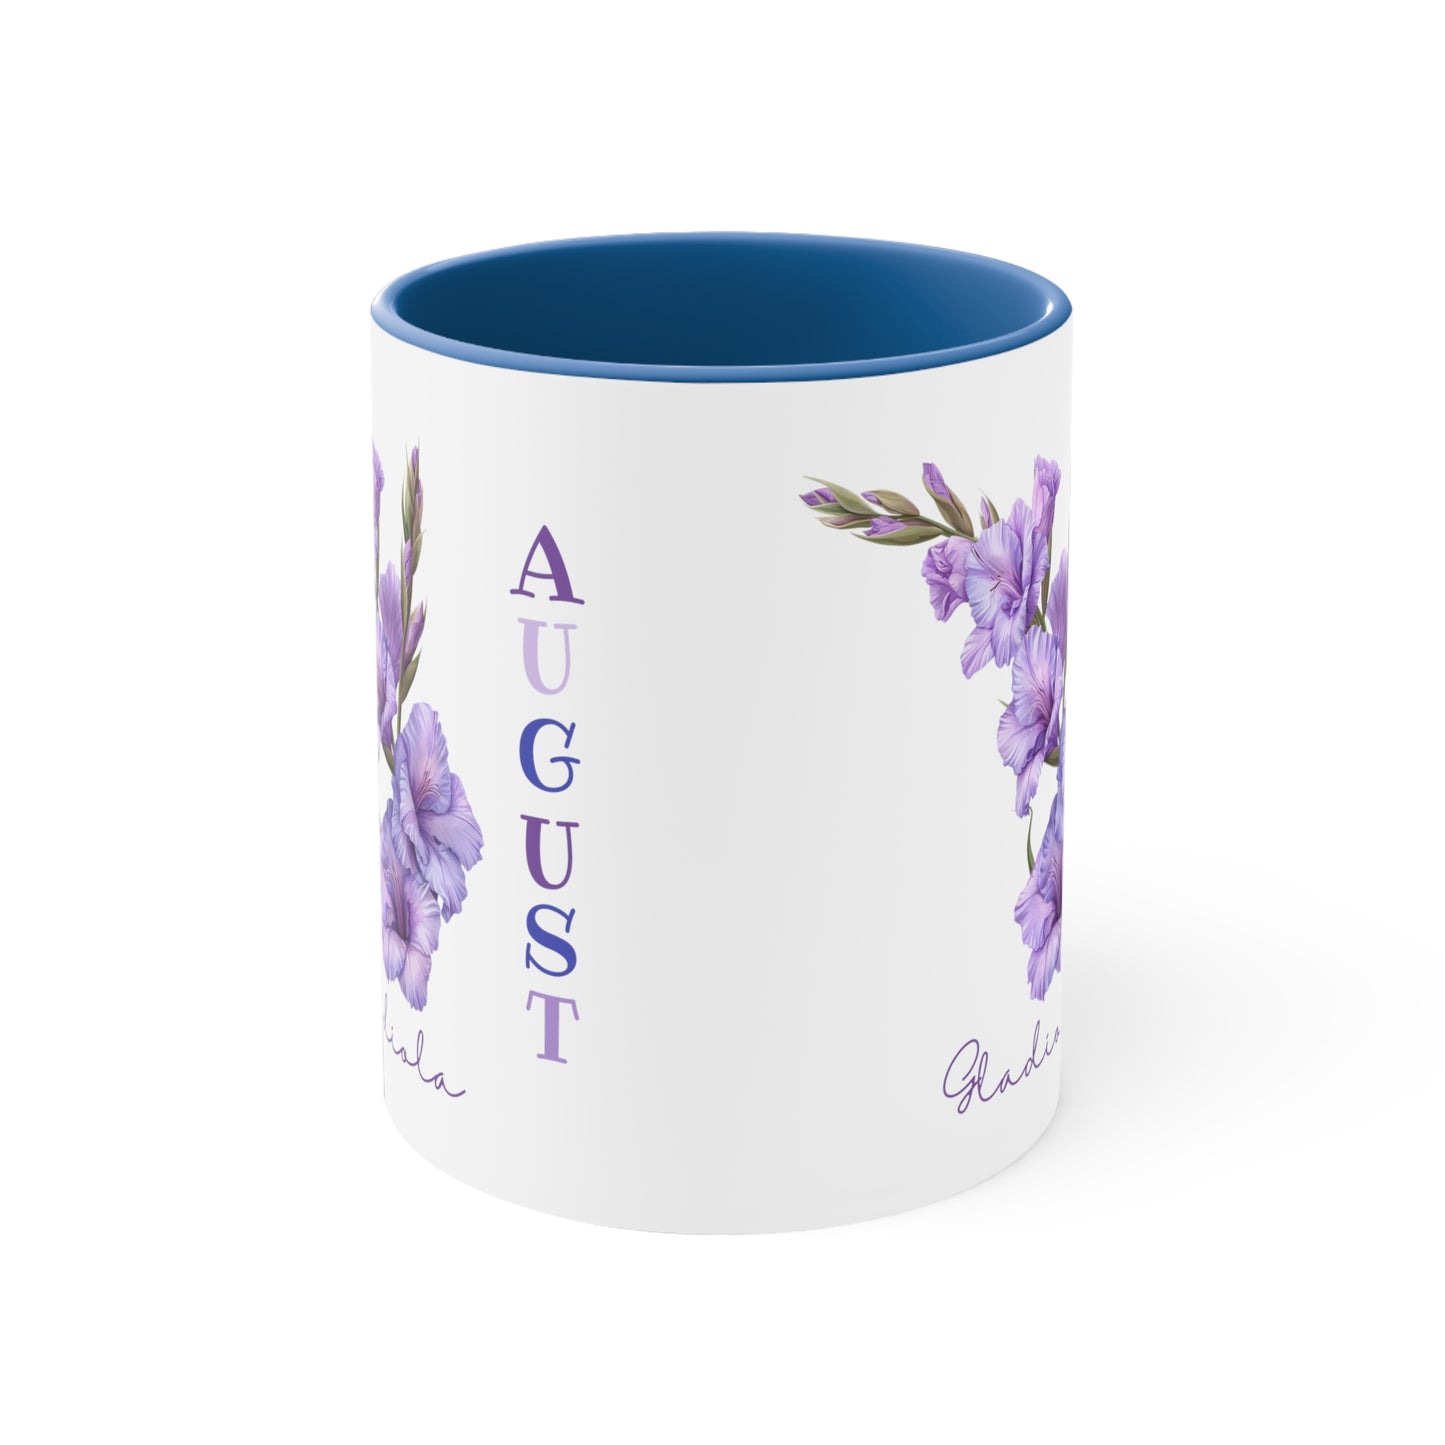 August Birth Flower Coffee Mug, 11oz, Birth Month, Born in August, Coffee Mug, Gifts For Her, Gifts For Mom, Friend Gift, Flower Mug